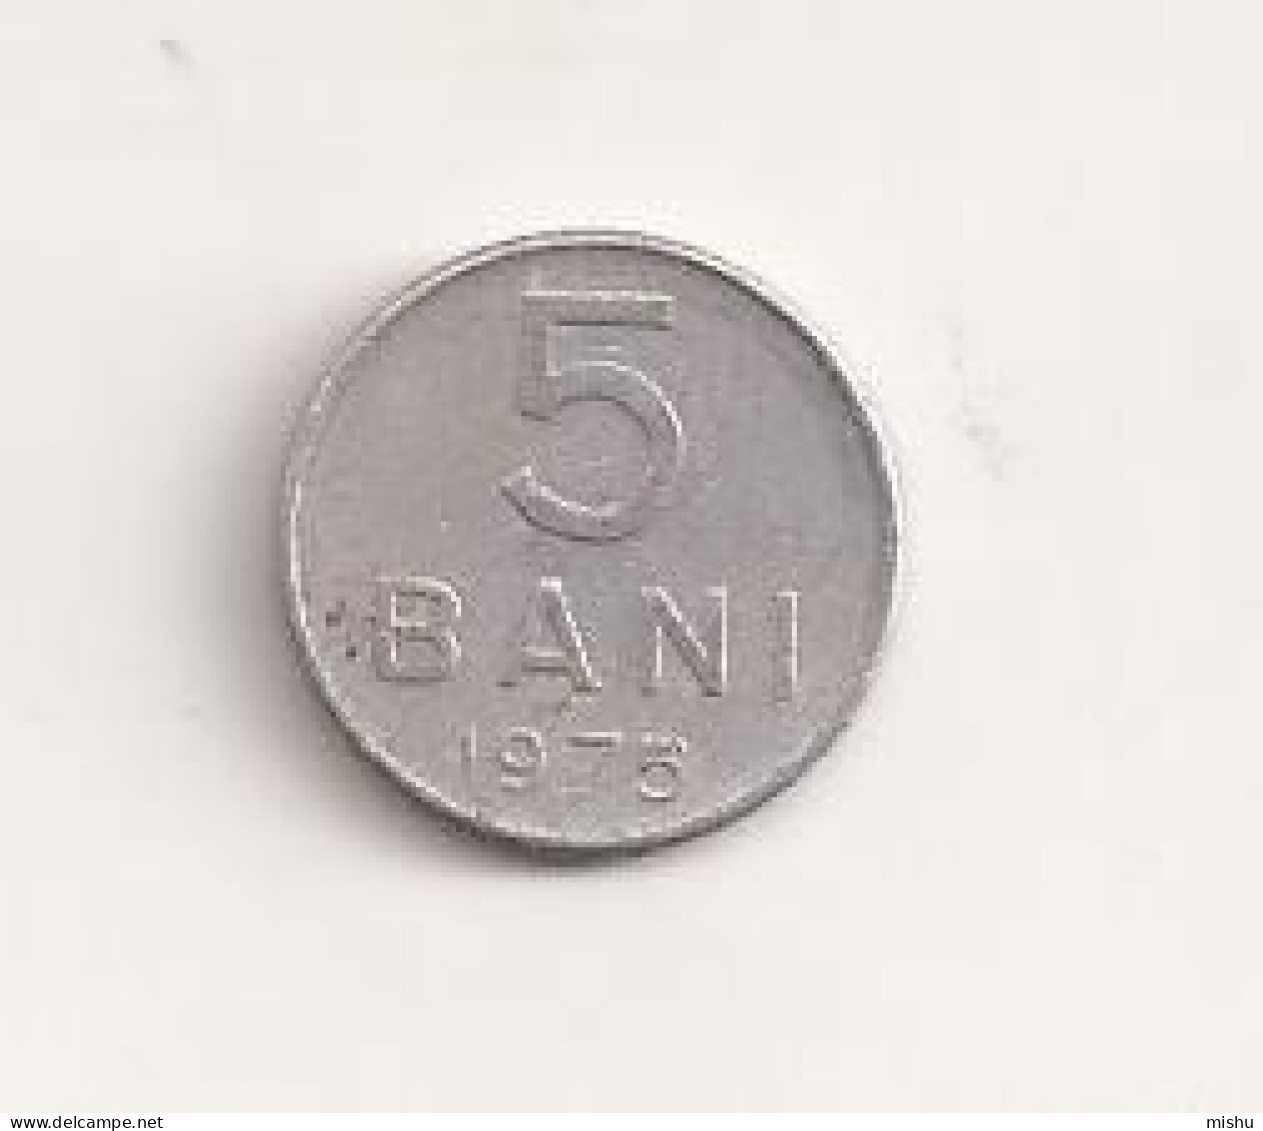 Coin - Romania - 5 Bani 1975 V16 - Roumanie